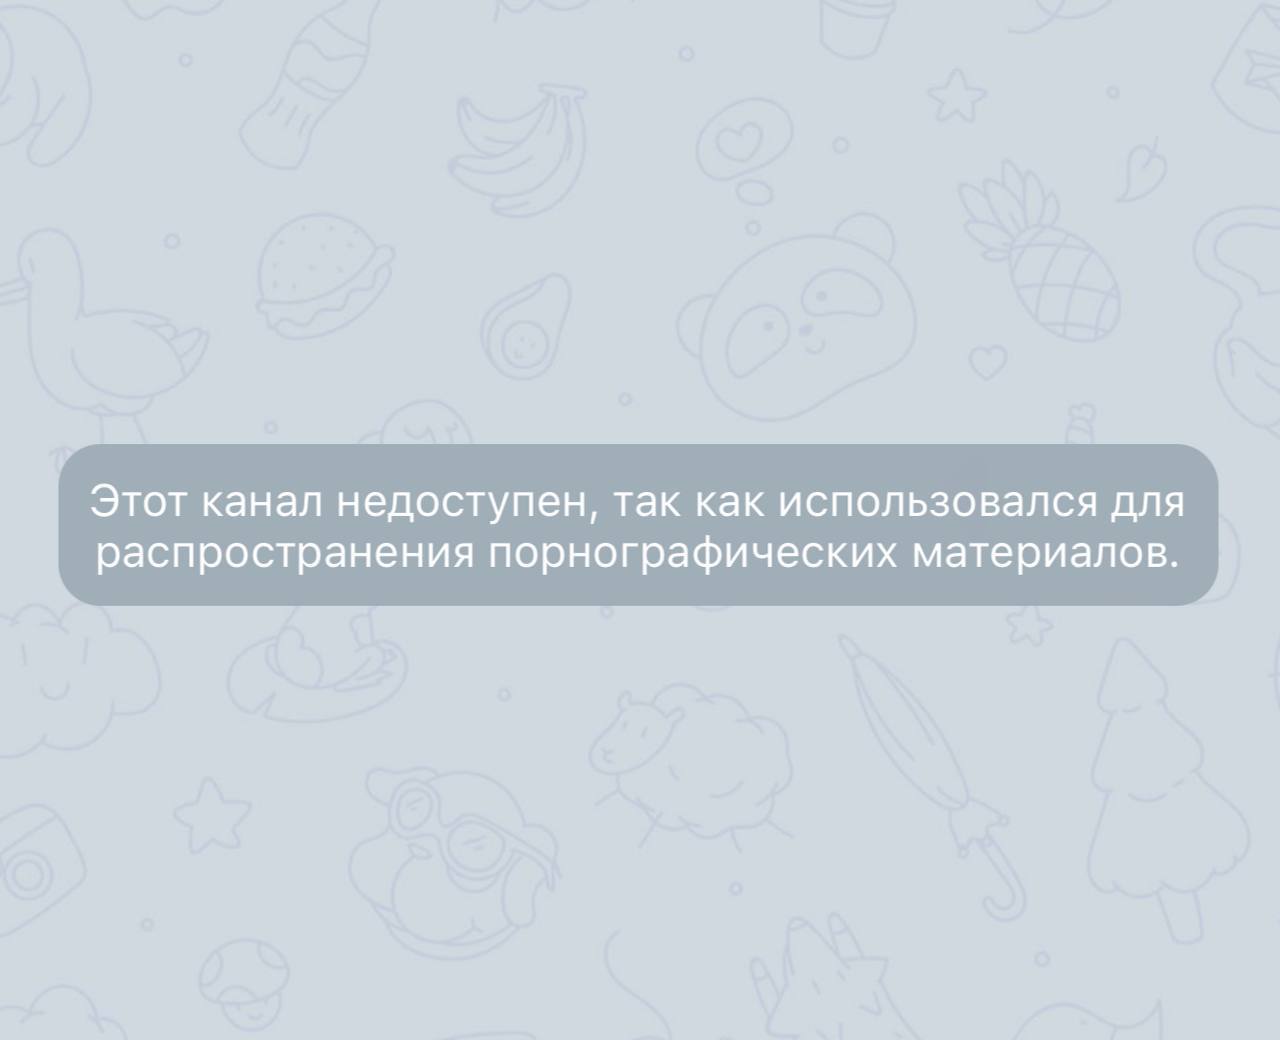 Как обойти блокировку телеграмма в казахстане на андроид фото 64